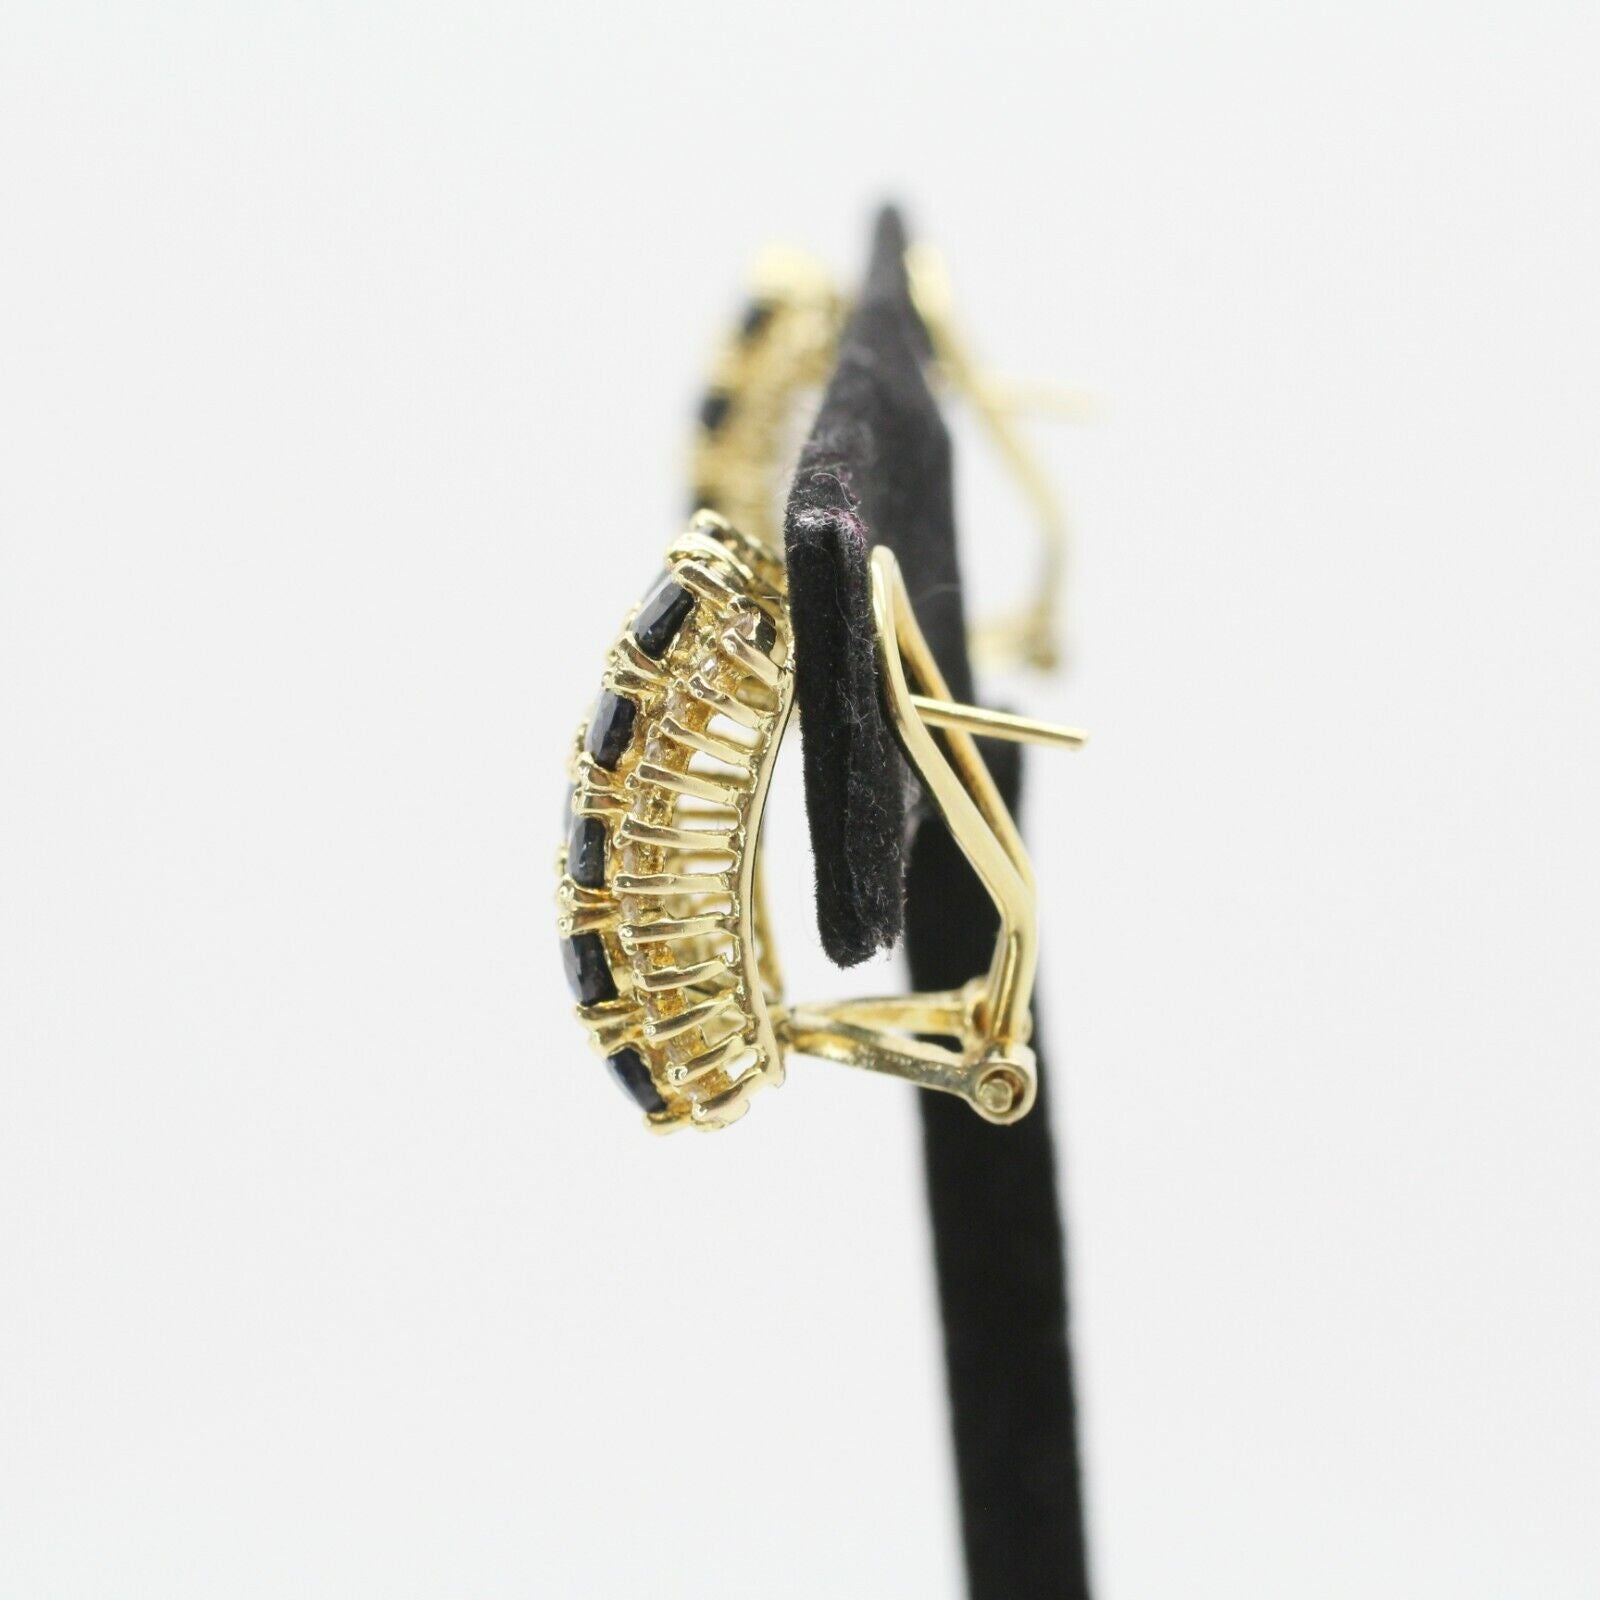 Oval Cut Blue Sapphire & Diamond Huggie Earrings Leverback in 14k Yellow Gold